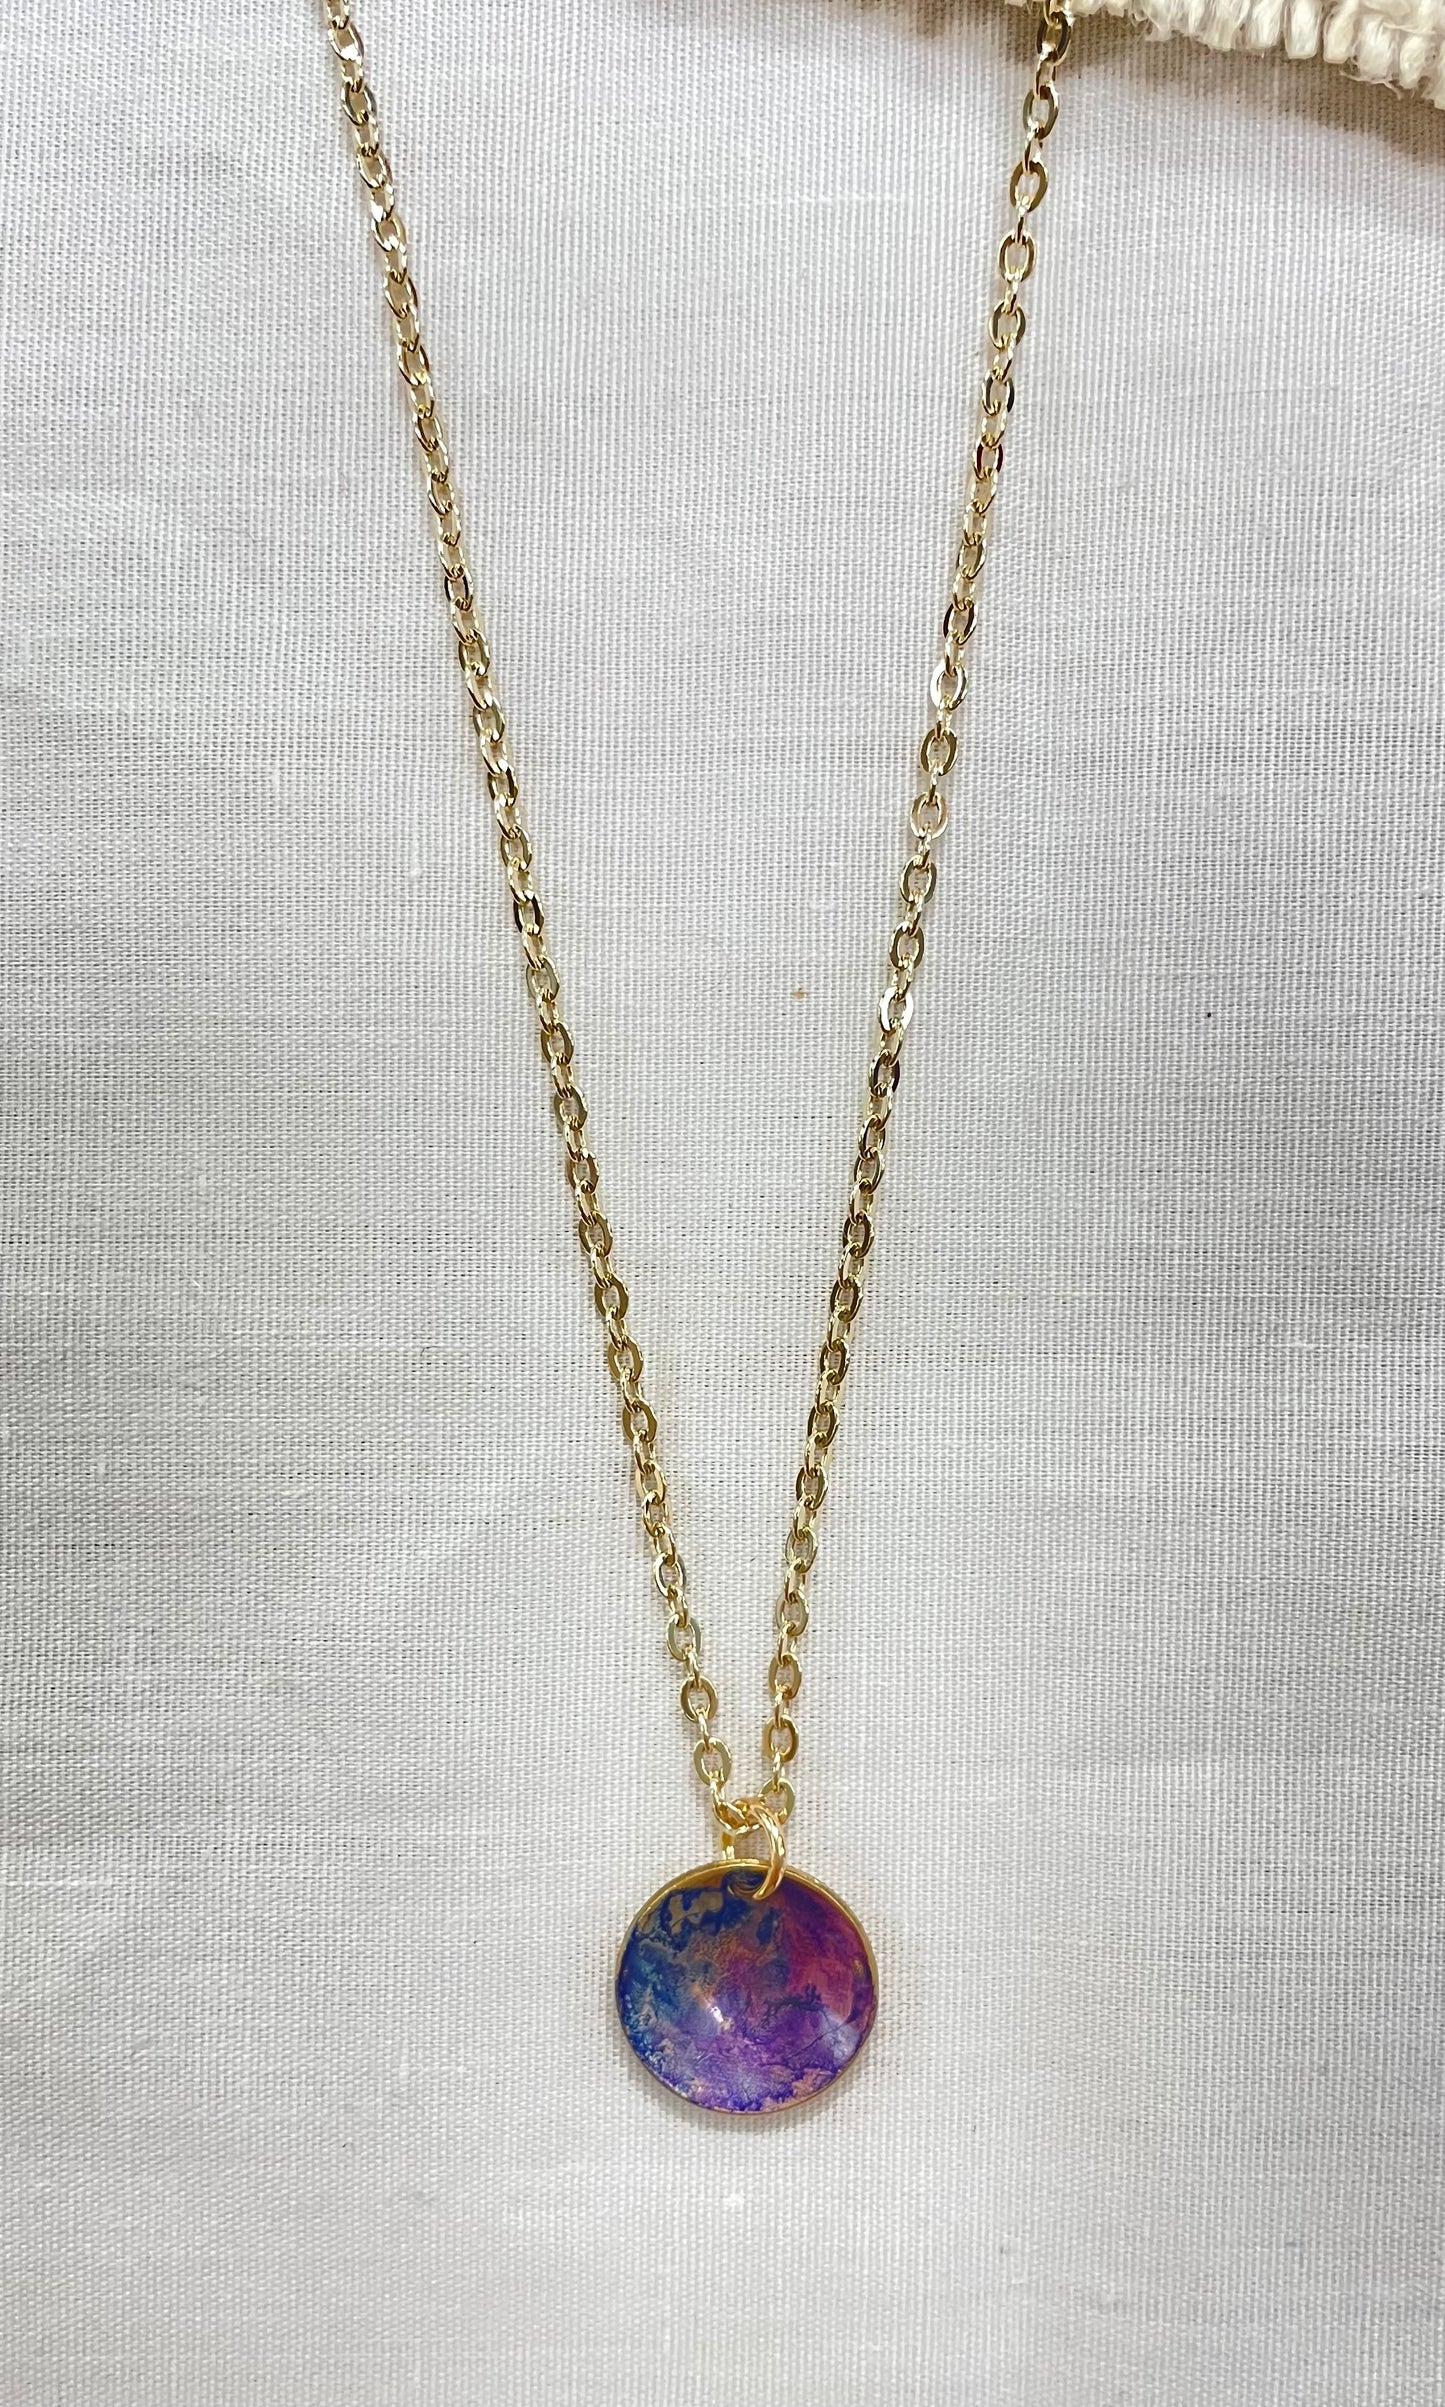 Watercolor Mini Pendant Necklace